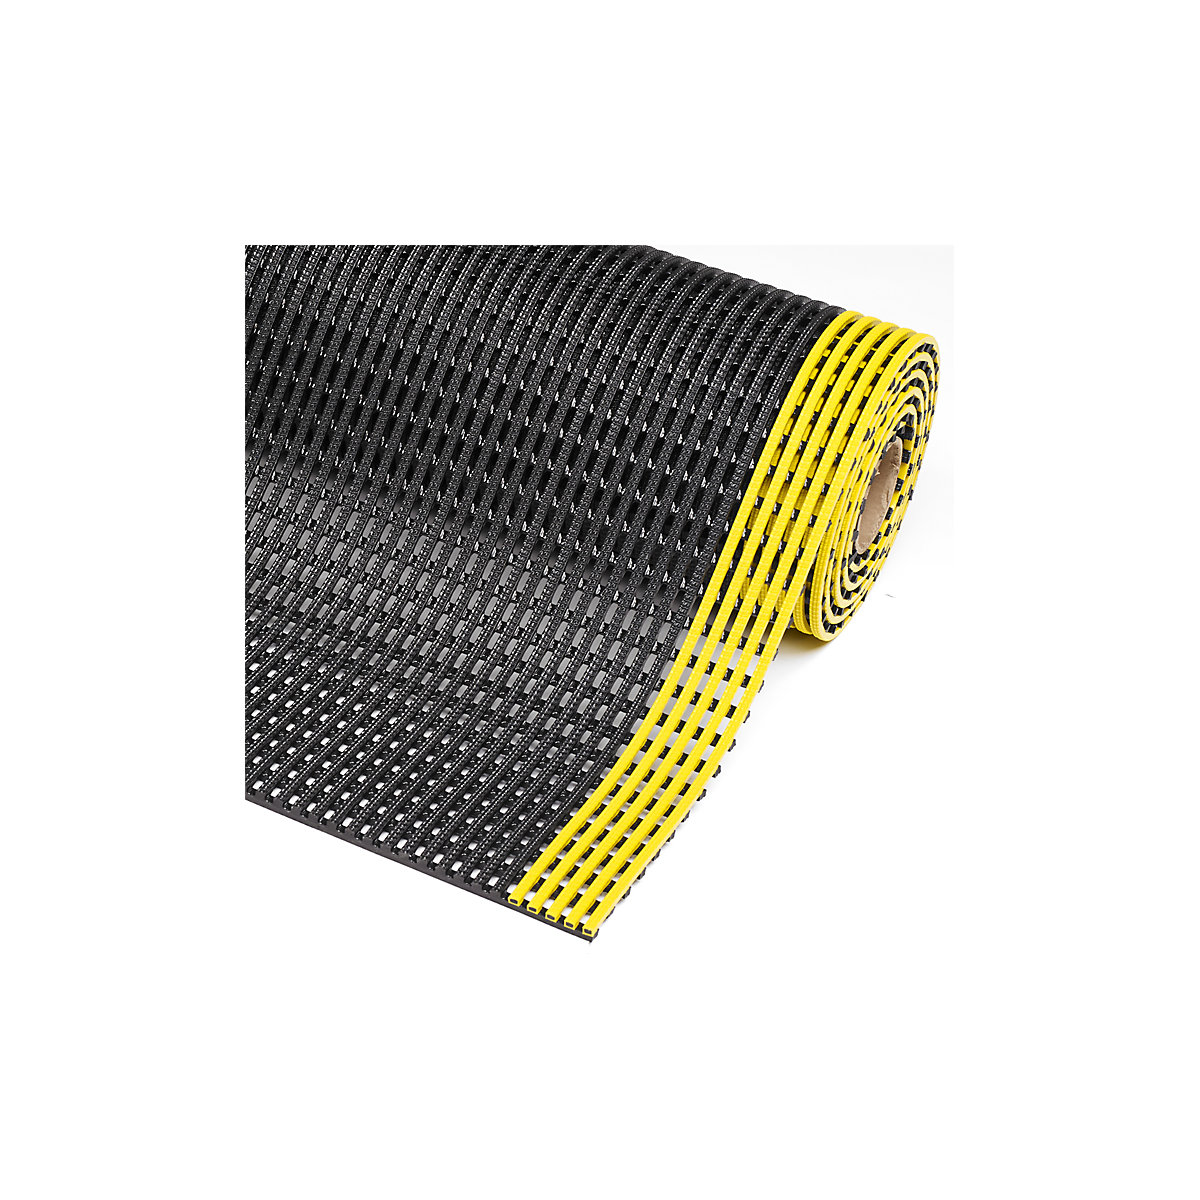 Gaasmat Flexdek™ – NOTRAX, breedte 900 mm, per str. m, zwart/geel-2